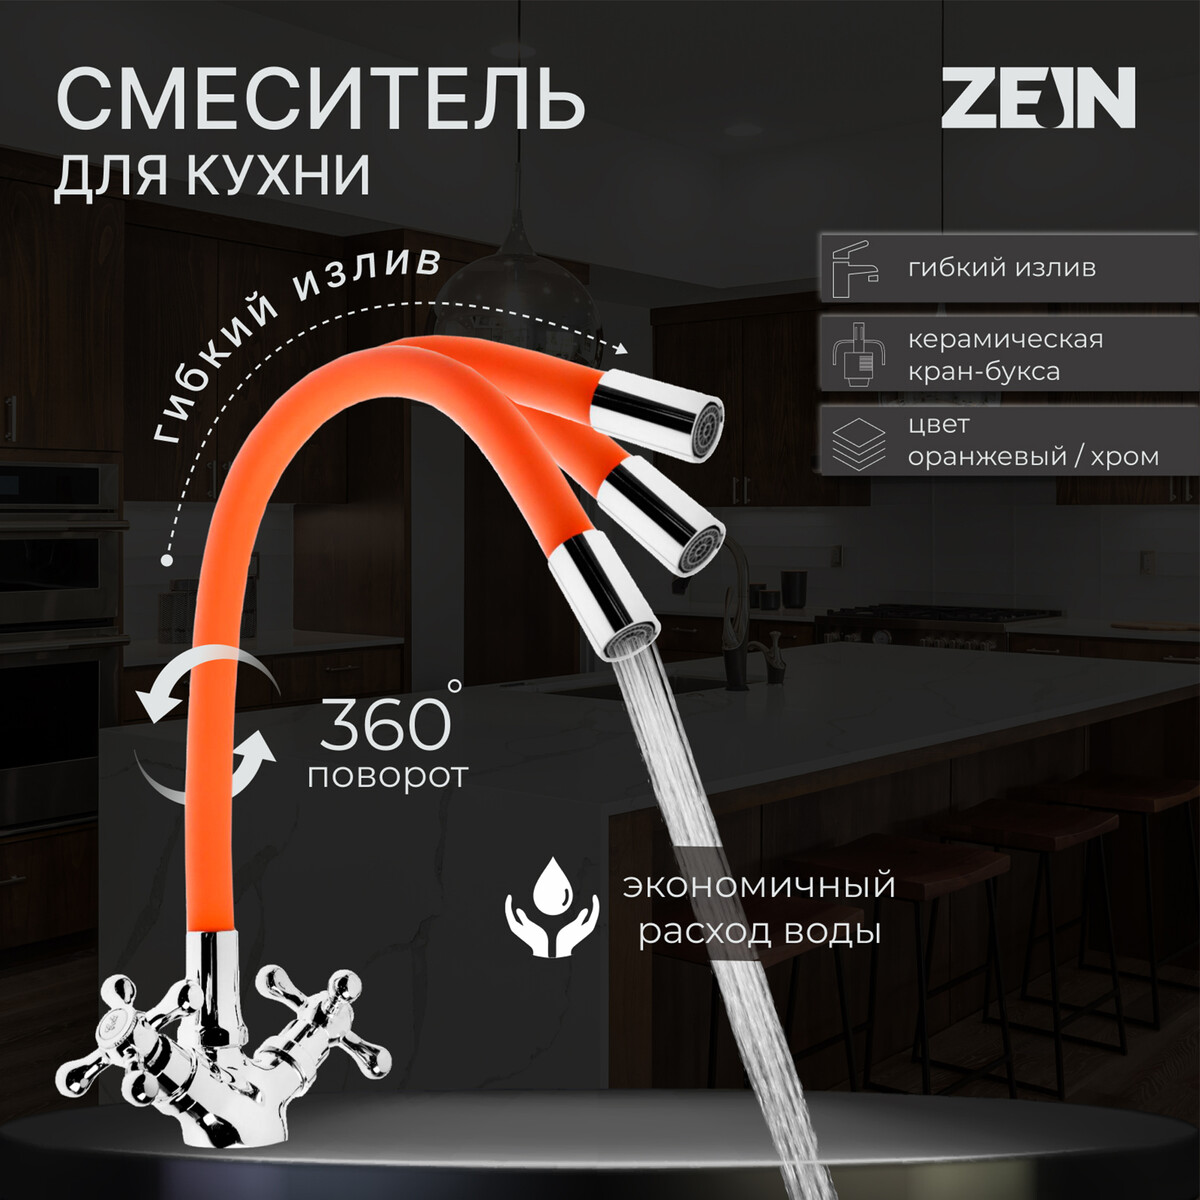 Смеситель для кухни zein z2107, двухвентильный, силиконовый излив, оранжевый/хром